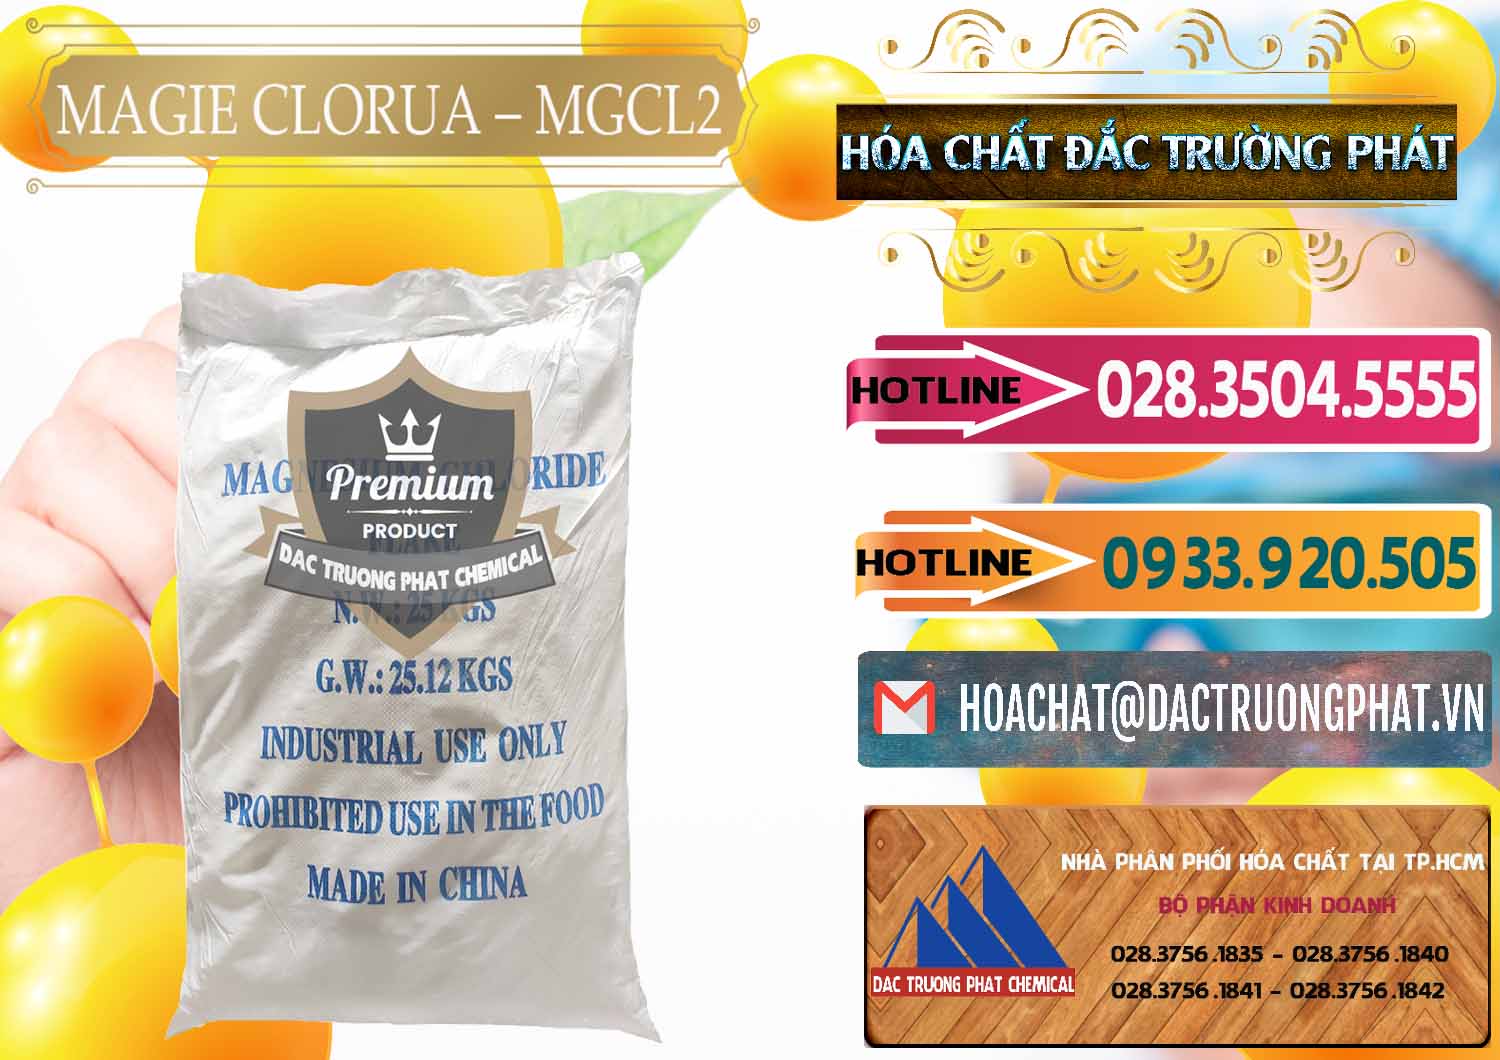 Nơi chuyên kinh doanh ( bán ) Magie Clorua – MGCL2 96% Dạng Vảy Trung Quốc China - 0091 - Công ty chuyên nhập khẩu & cung cấp hóa chất tại TP.HCM - dactruongphat.vn